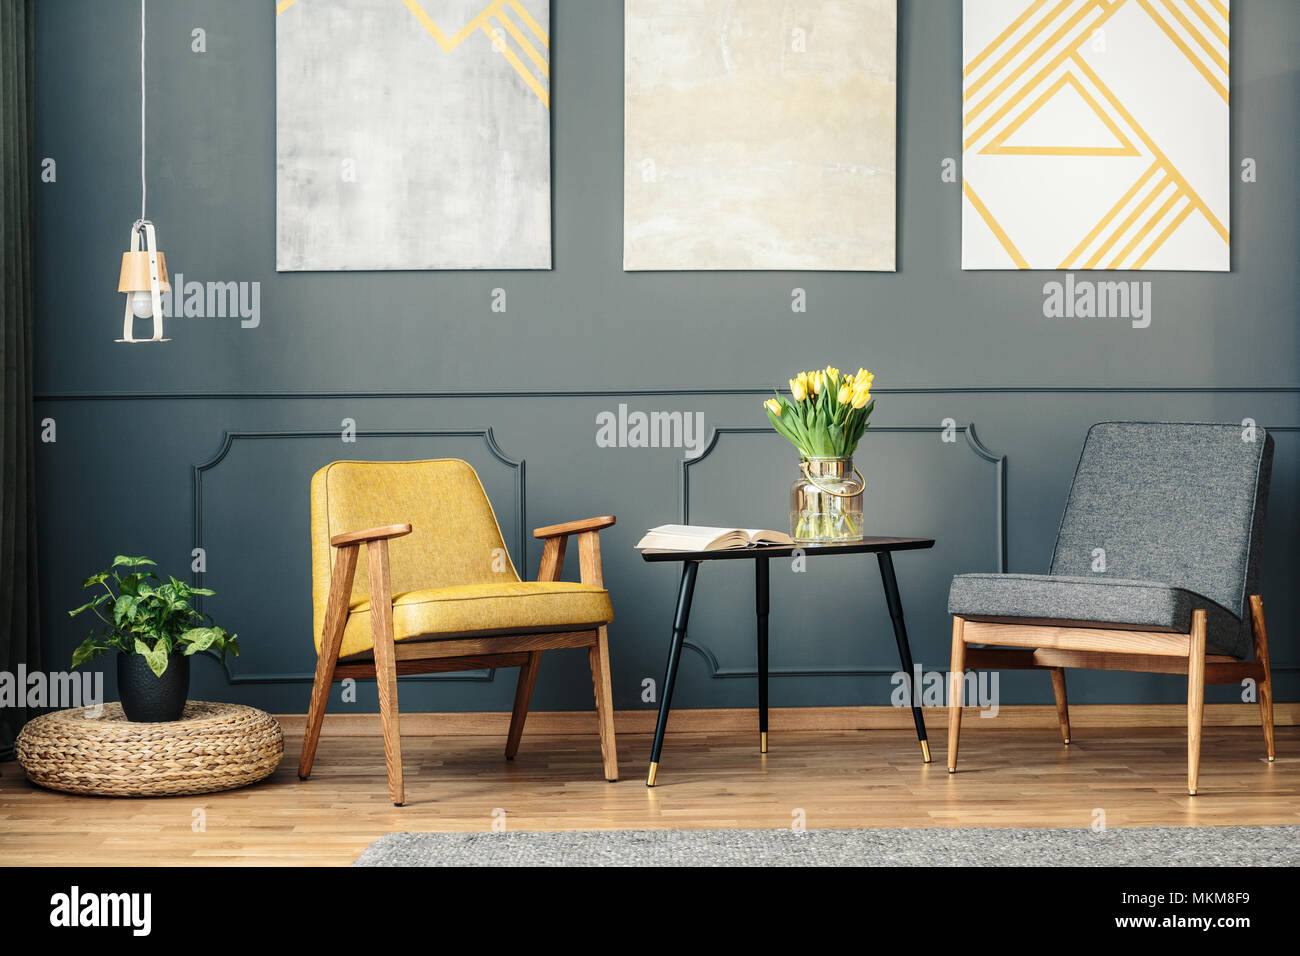 Retro Stühle in vintage Wohnzimmer Interieur mit Gemälden, Lampe, Anlage  und Buch auf dem Tisch Stockfotografie - Alamy